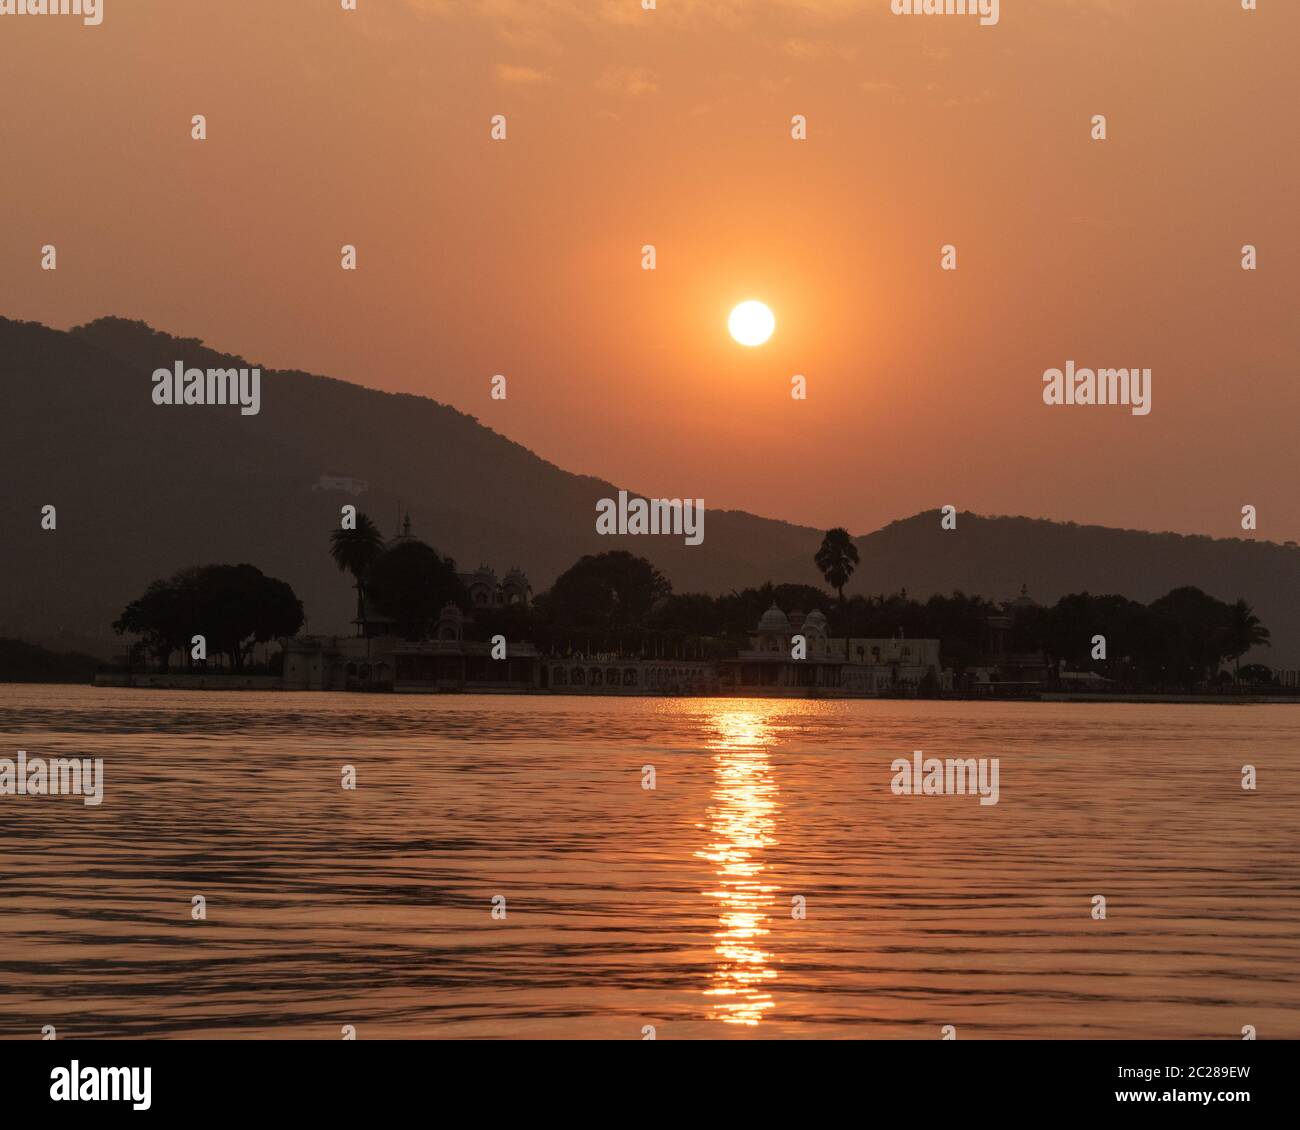 Puesta de sol en el lago Pichola. Foto de alta calidad Foto de stock